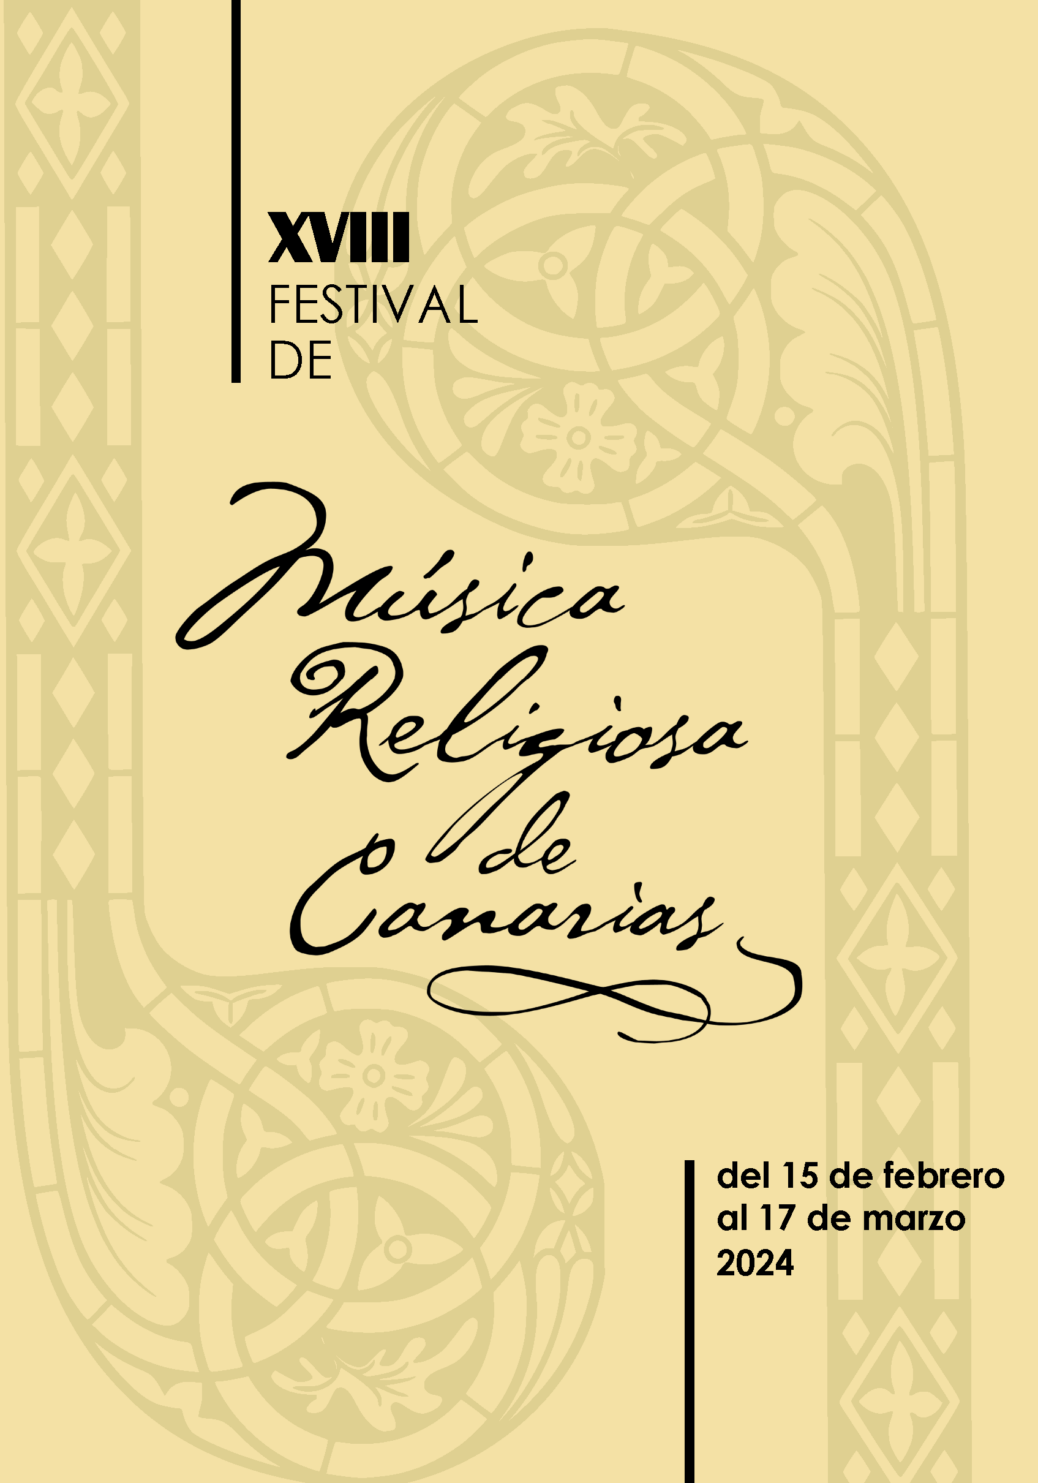 Festival de Música religiosa de Canarias 2024